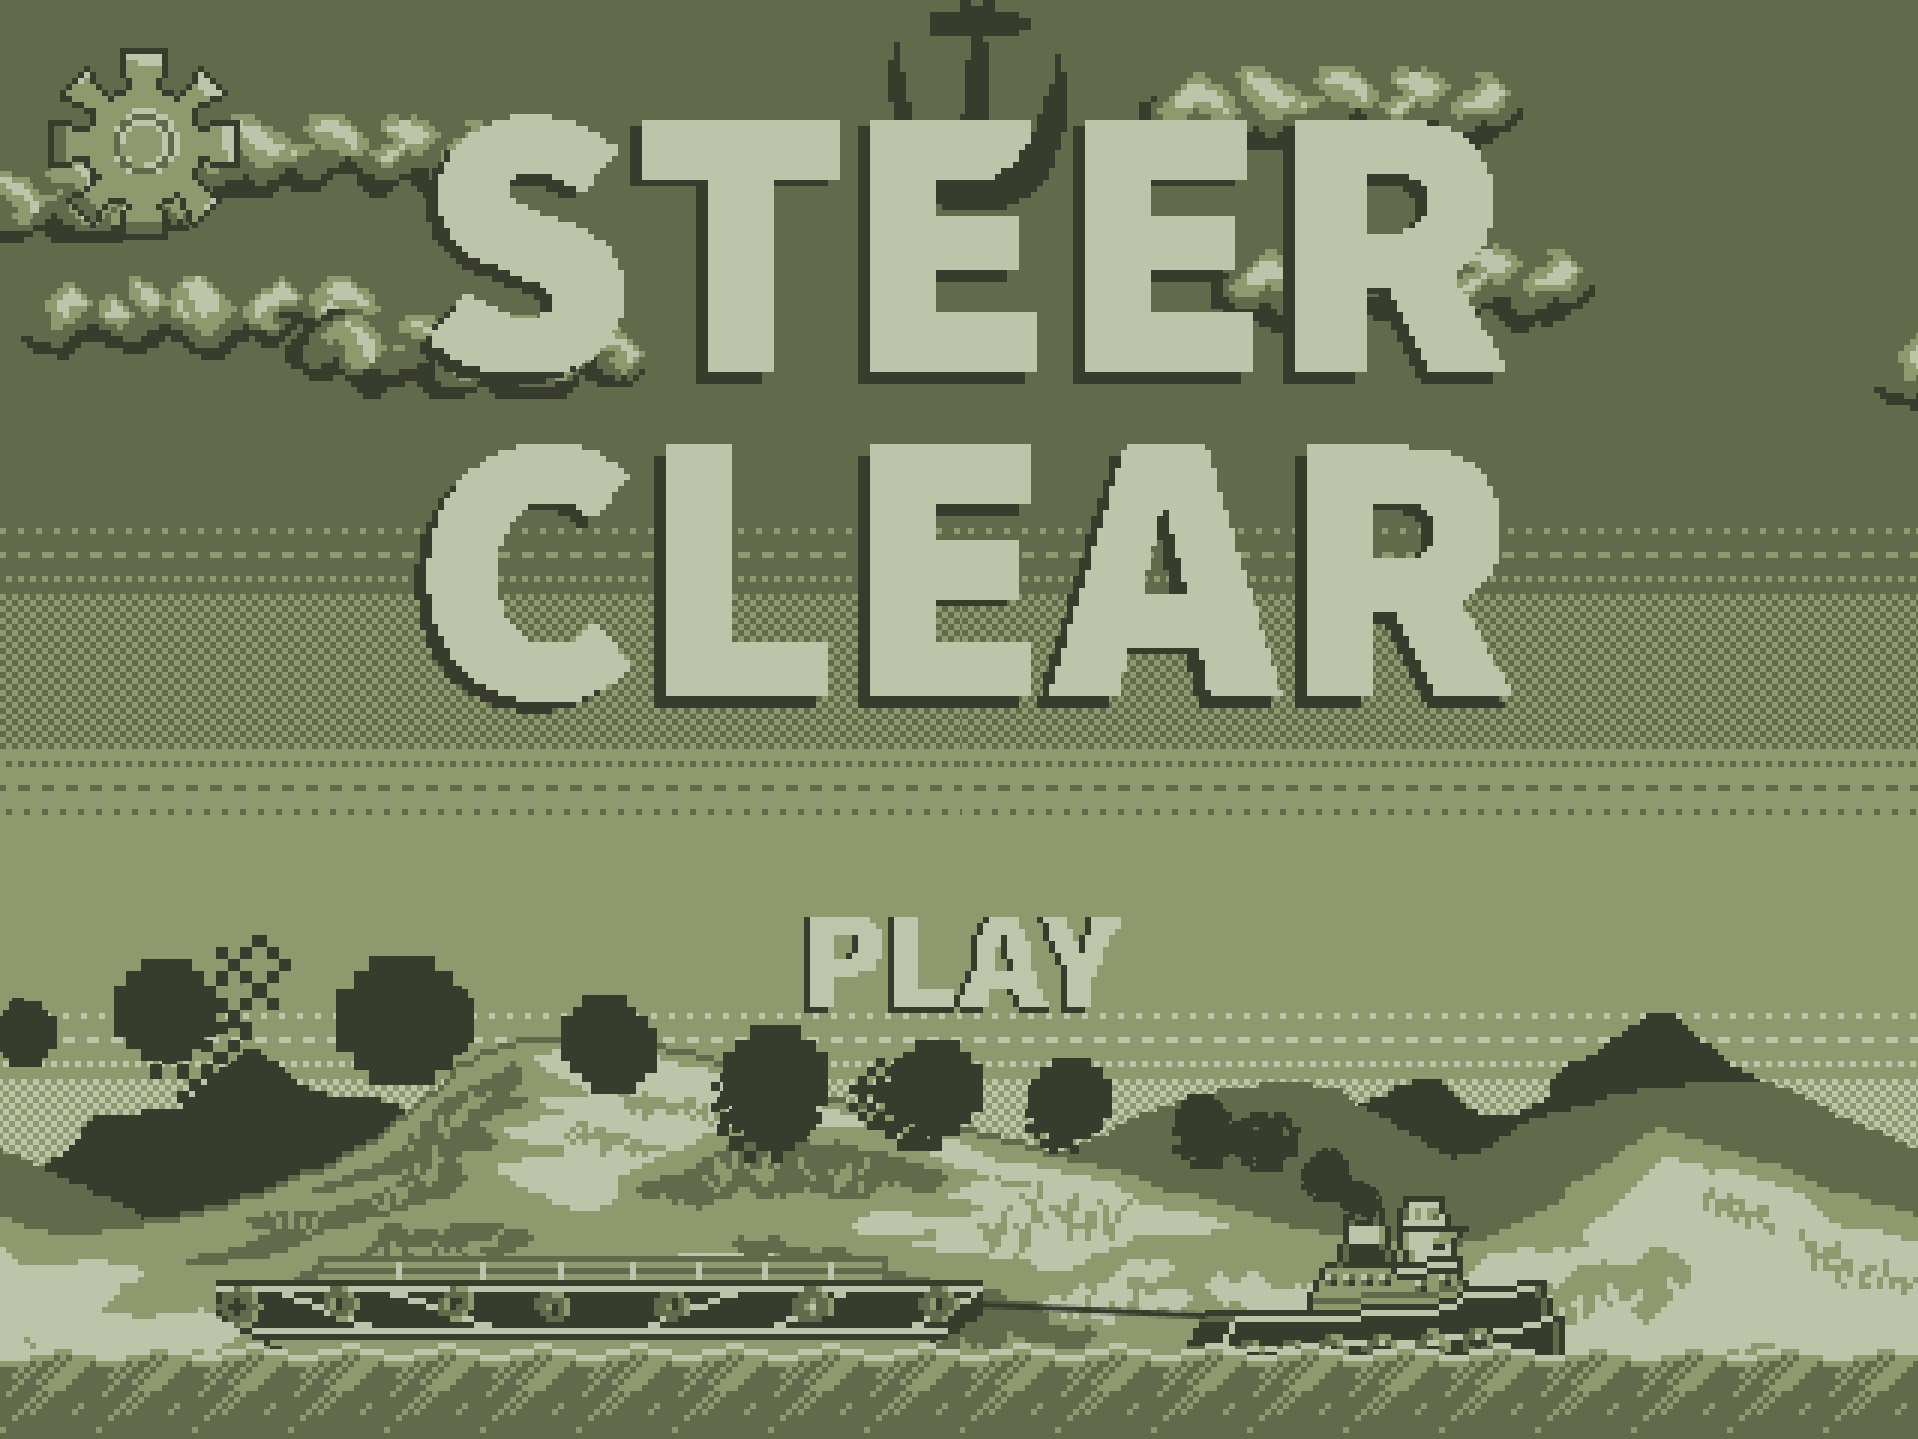 Steer Clear